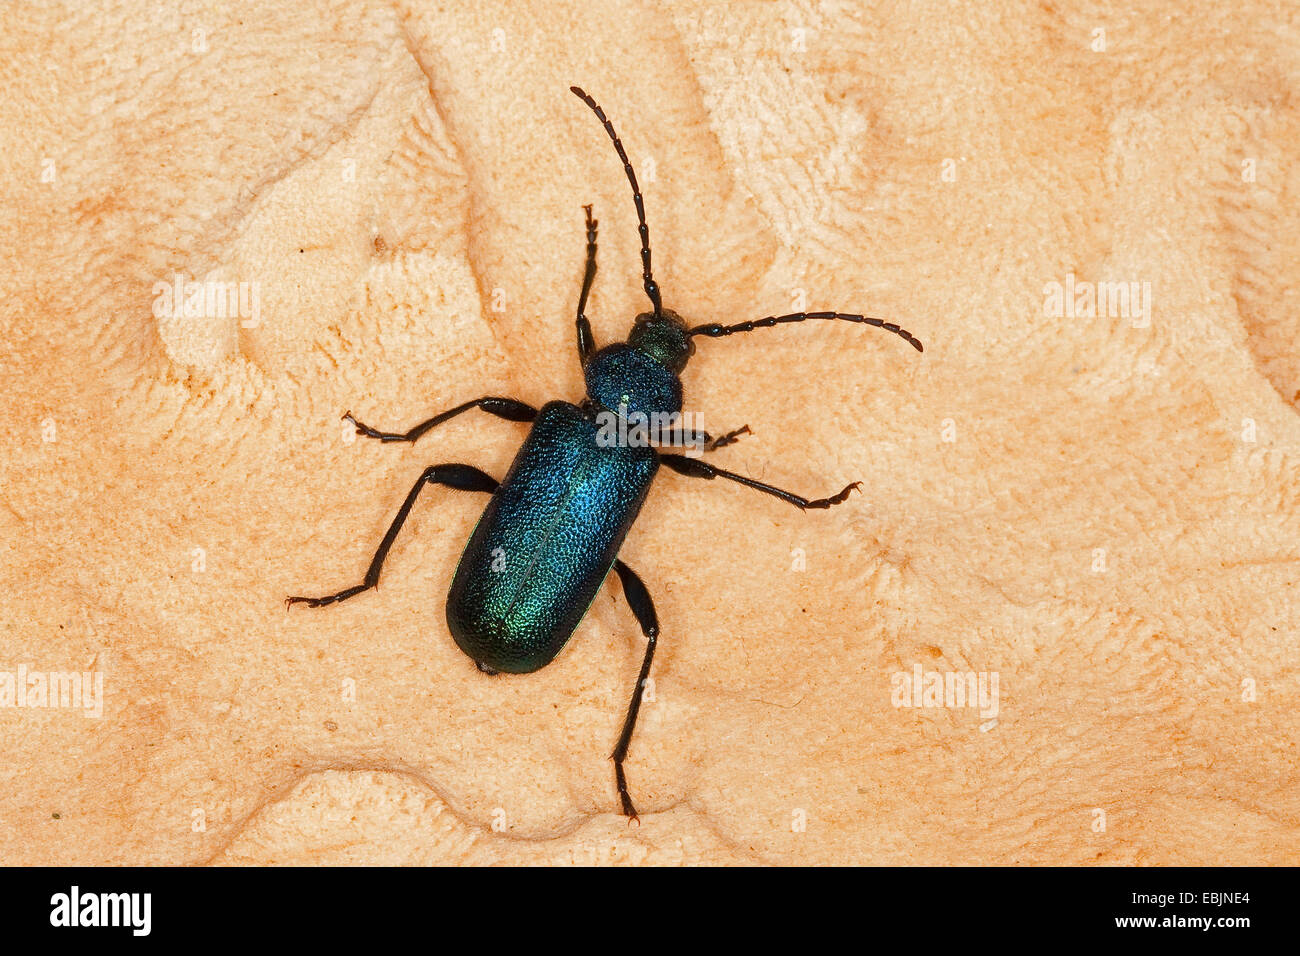 Violet tanbark beetle, Longhorn beetle, Long-horned beetle (Callidium violaceum), sitting on deadwood, Germany Stock Photo